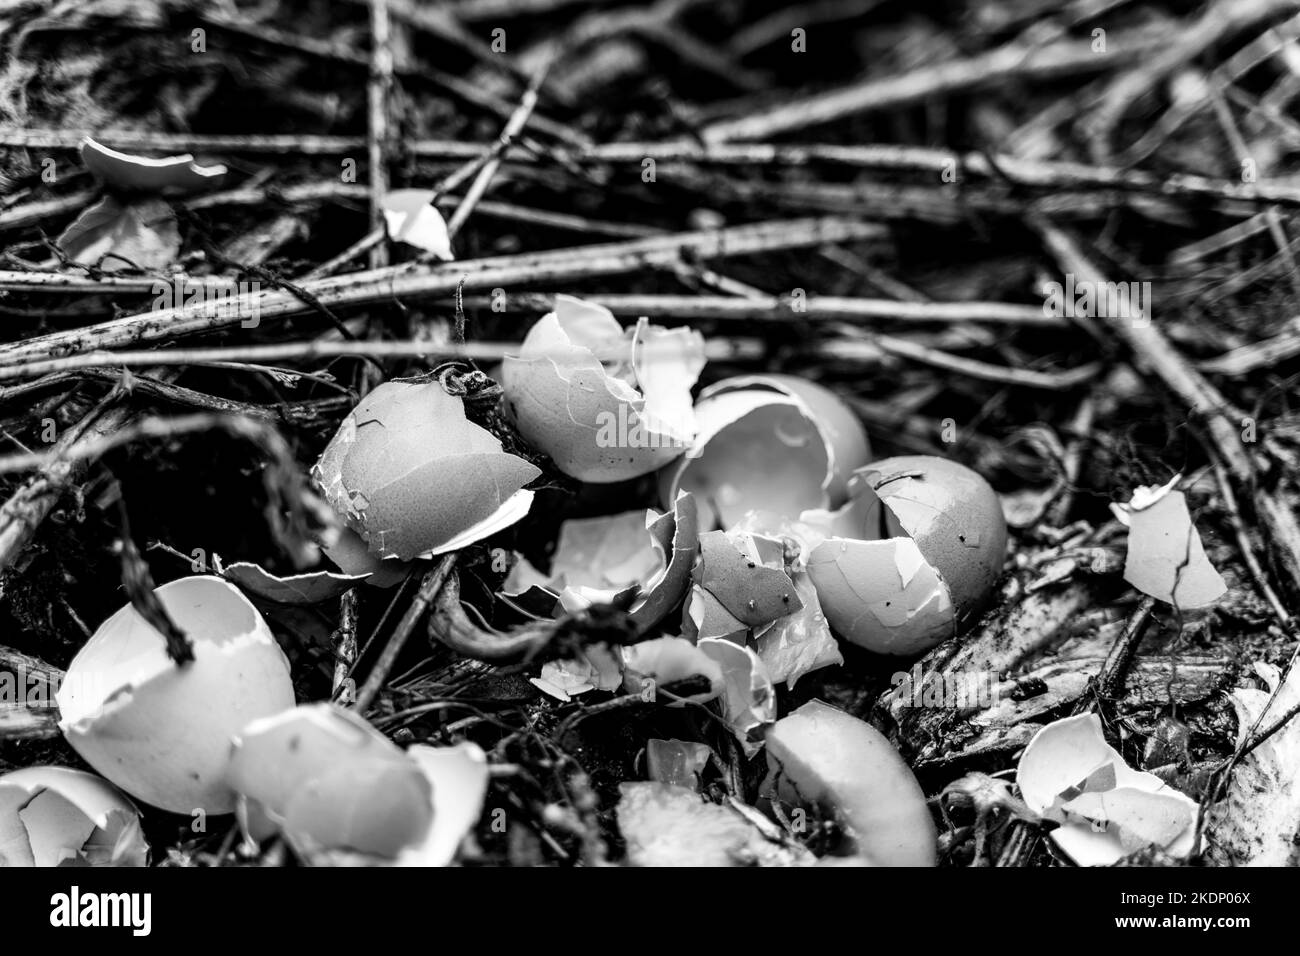 Primo piano foto in bianco e nero di un cumulo di compost con gusci d'uovo. Uso razionale delle risorse naturali. Raccogliendo fertilizzante organico fatto in casa per il gar Foto Stock